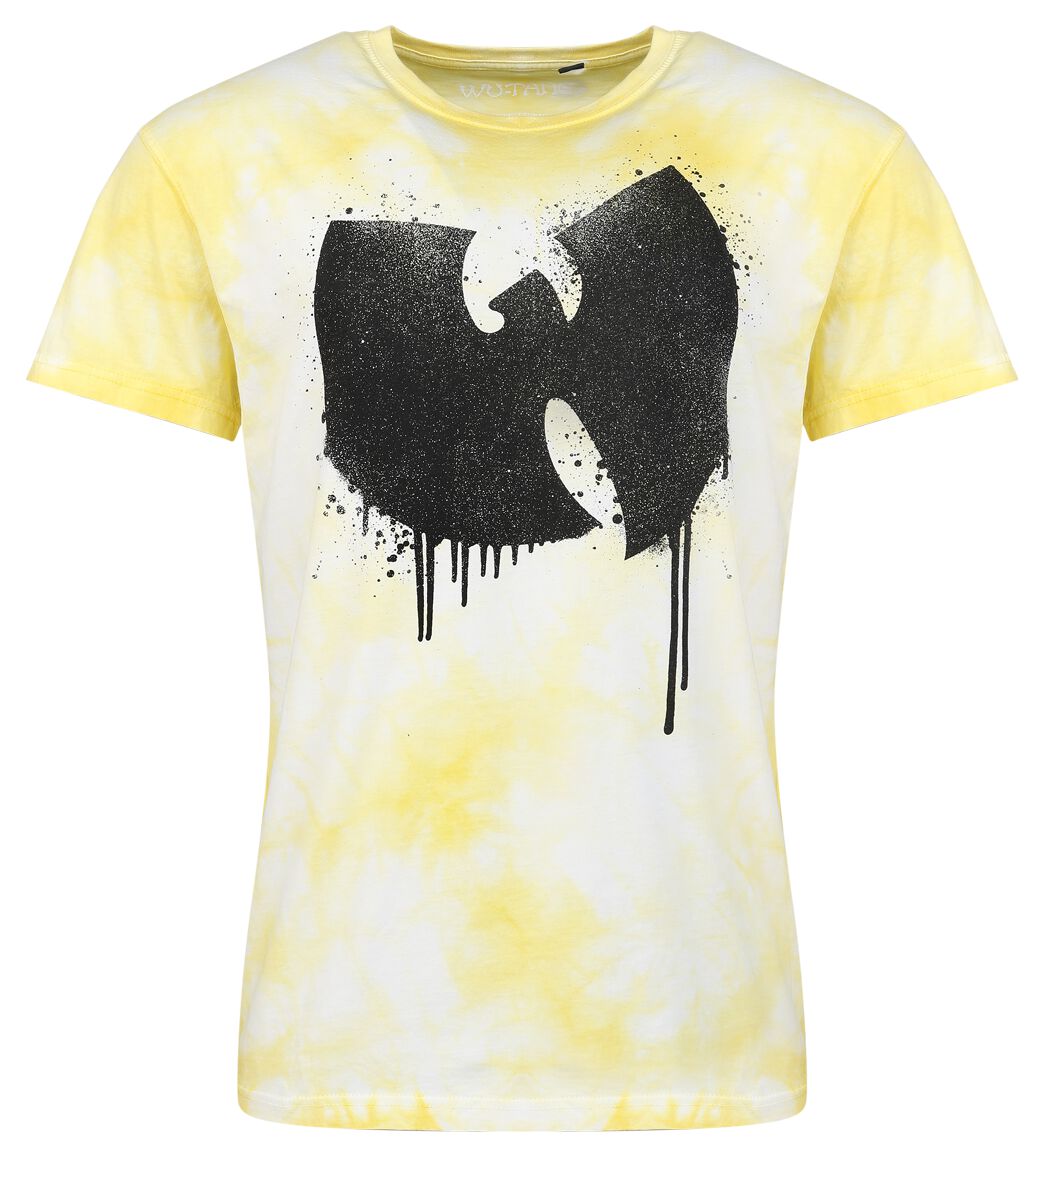 Wu-Tang Clan T-Shirt - ANTFW - S bis 3XL - für Männer - Größe M - gelb  - Lizenziertes Merchandise!